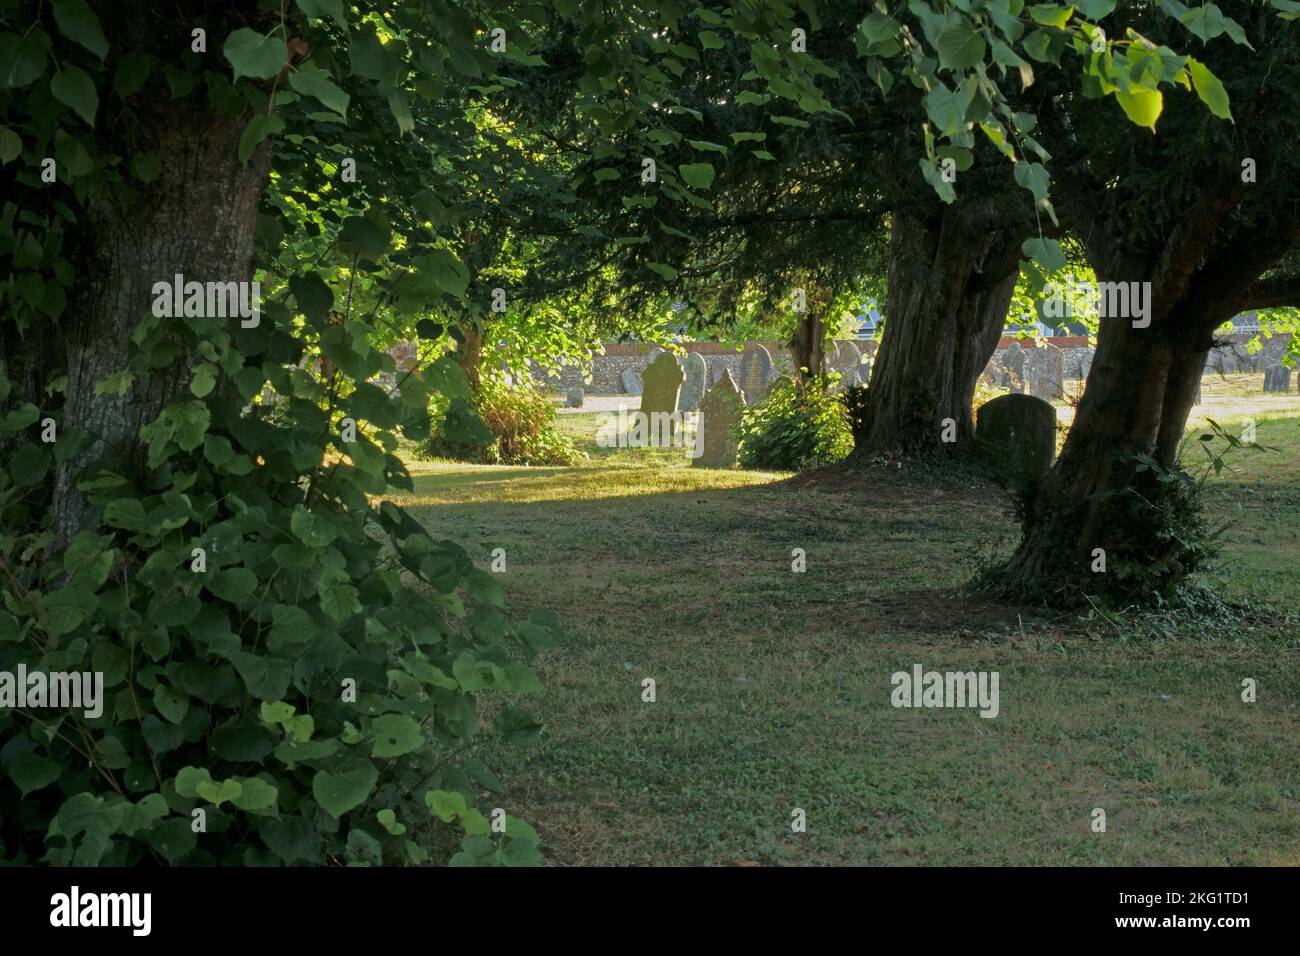 Vieux graviers dans un jardin de campagne avec de vieux arbres, des limes et des yews à la lumière du matin. Kintbury, église St Mary, près de Hungerford, Berkshire Banque D'Images